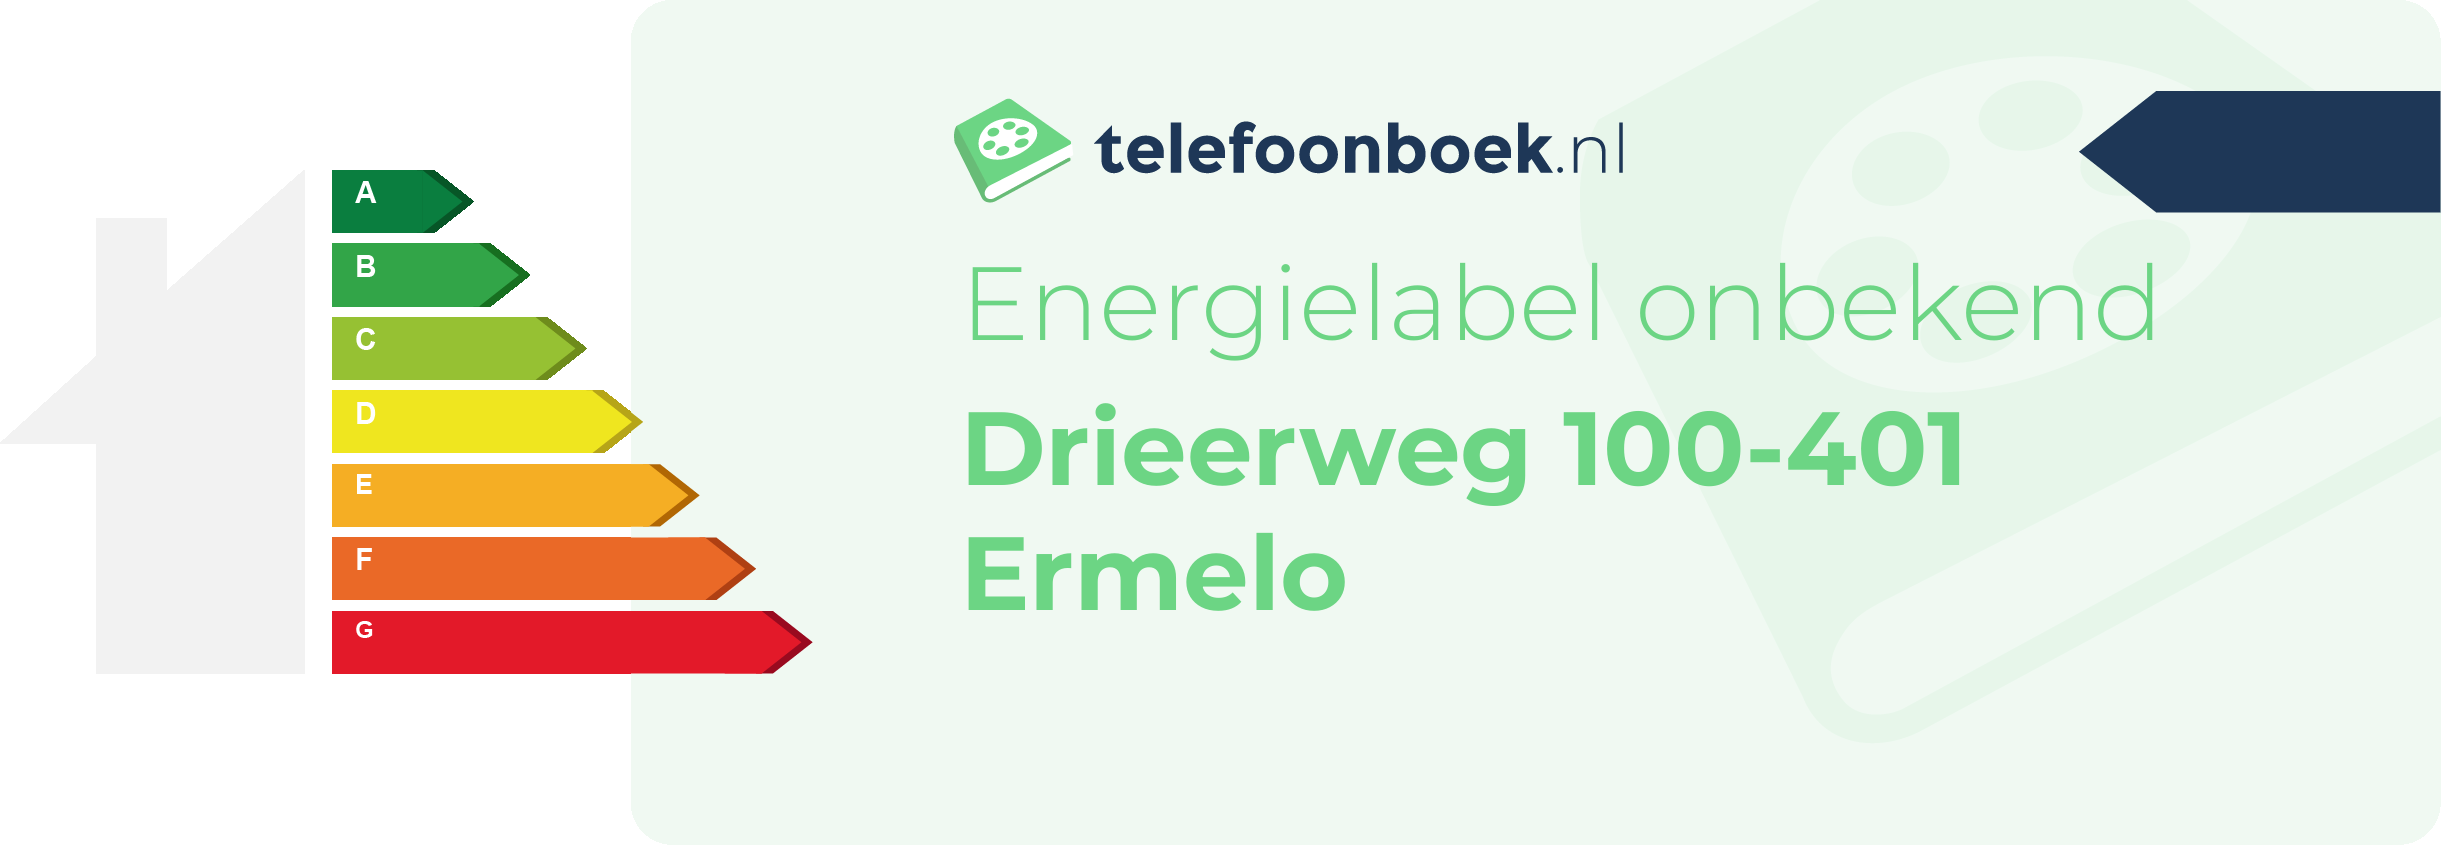 Energielabel Drieerweg 100-401 Ermelo